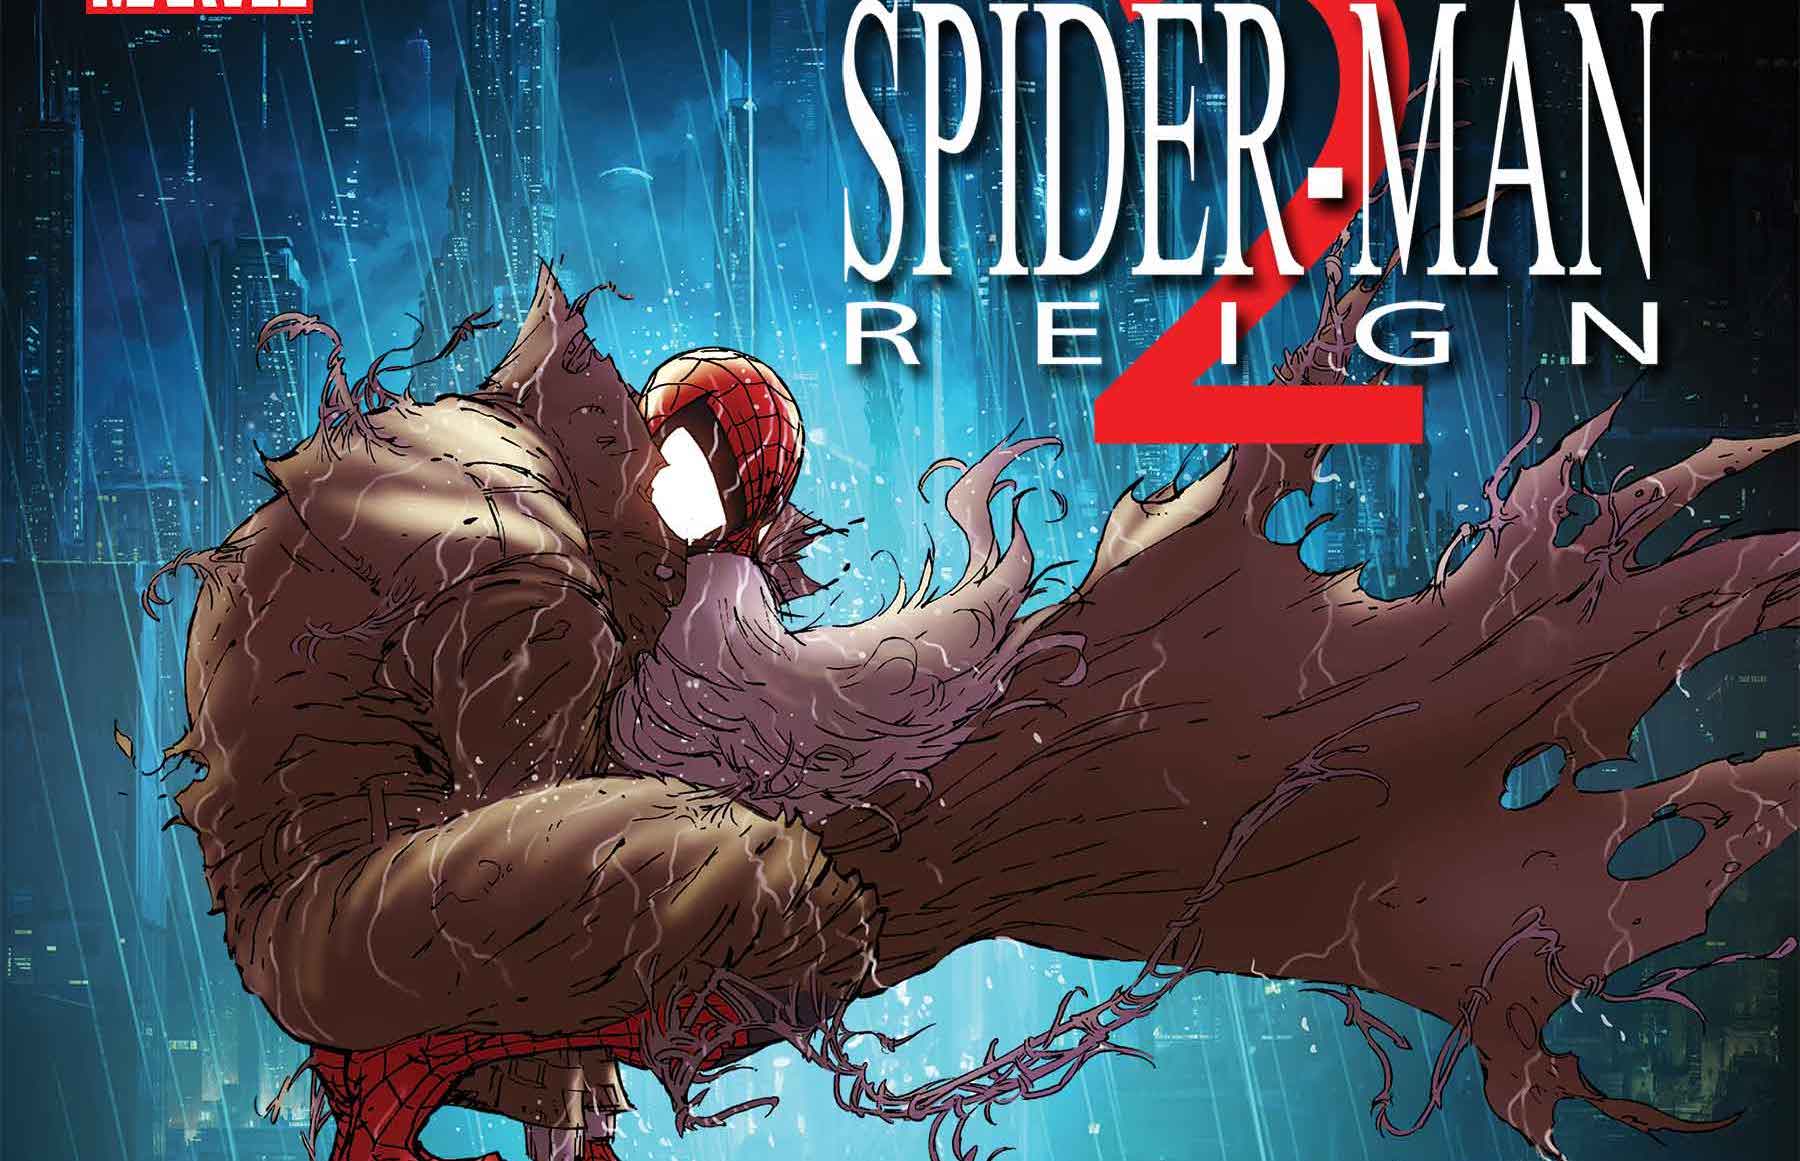 'Spider-Man: Reign 2' #1 is dark, blunt-force Spider-Man